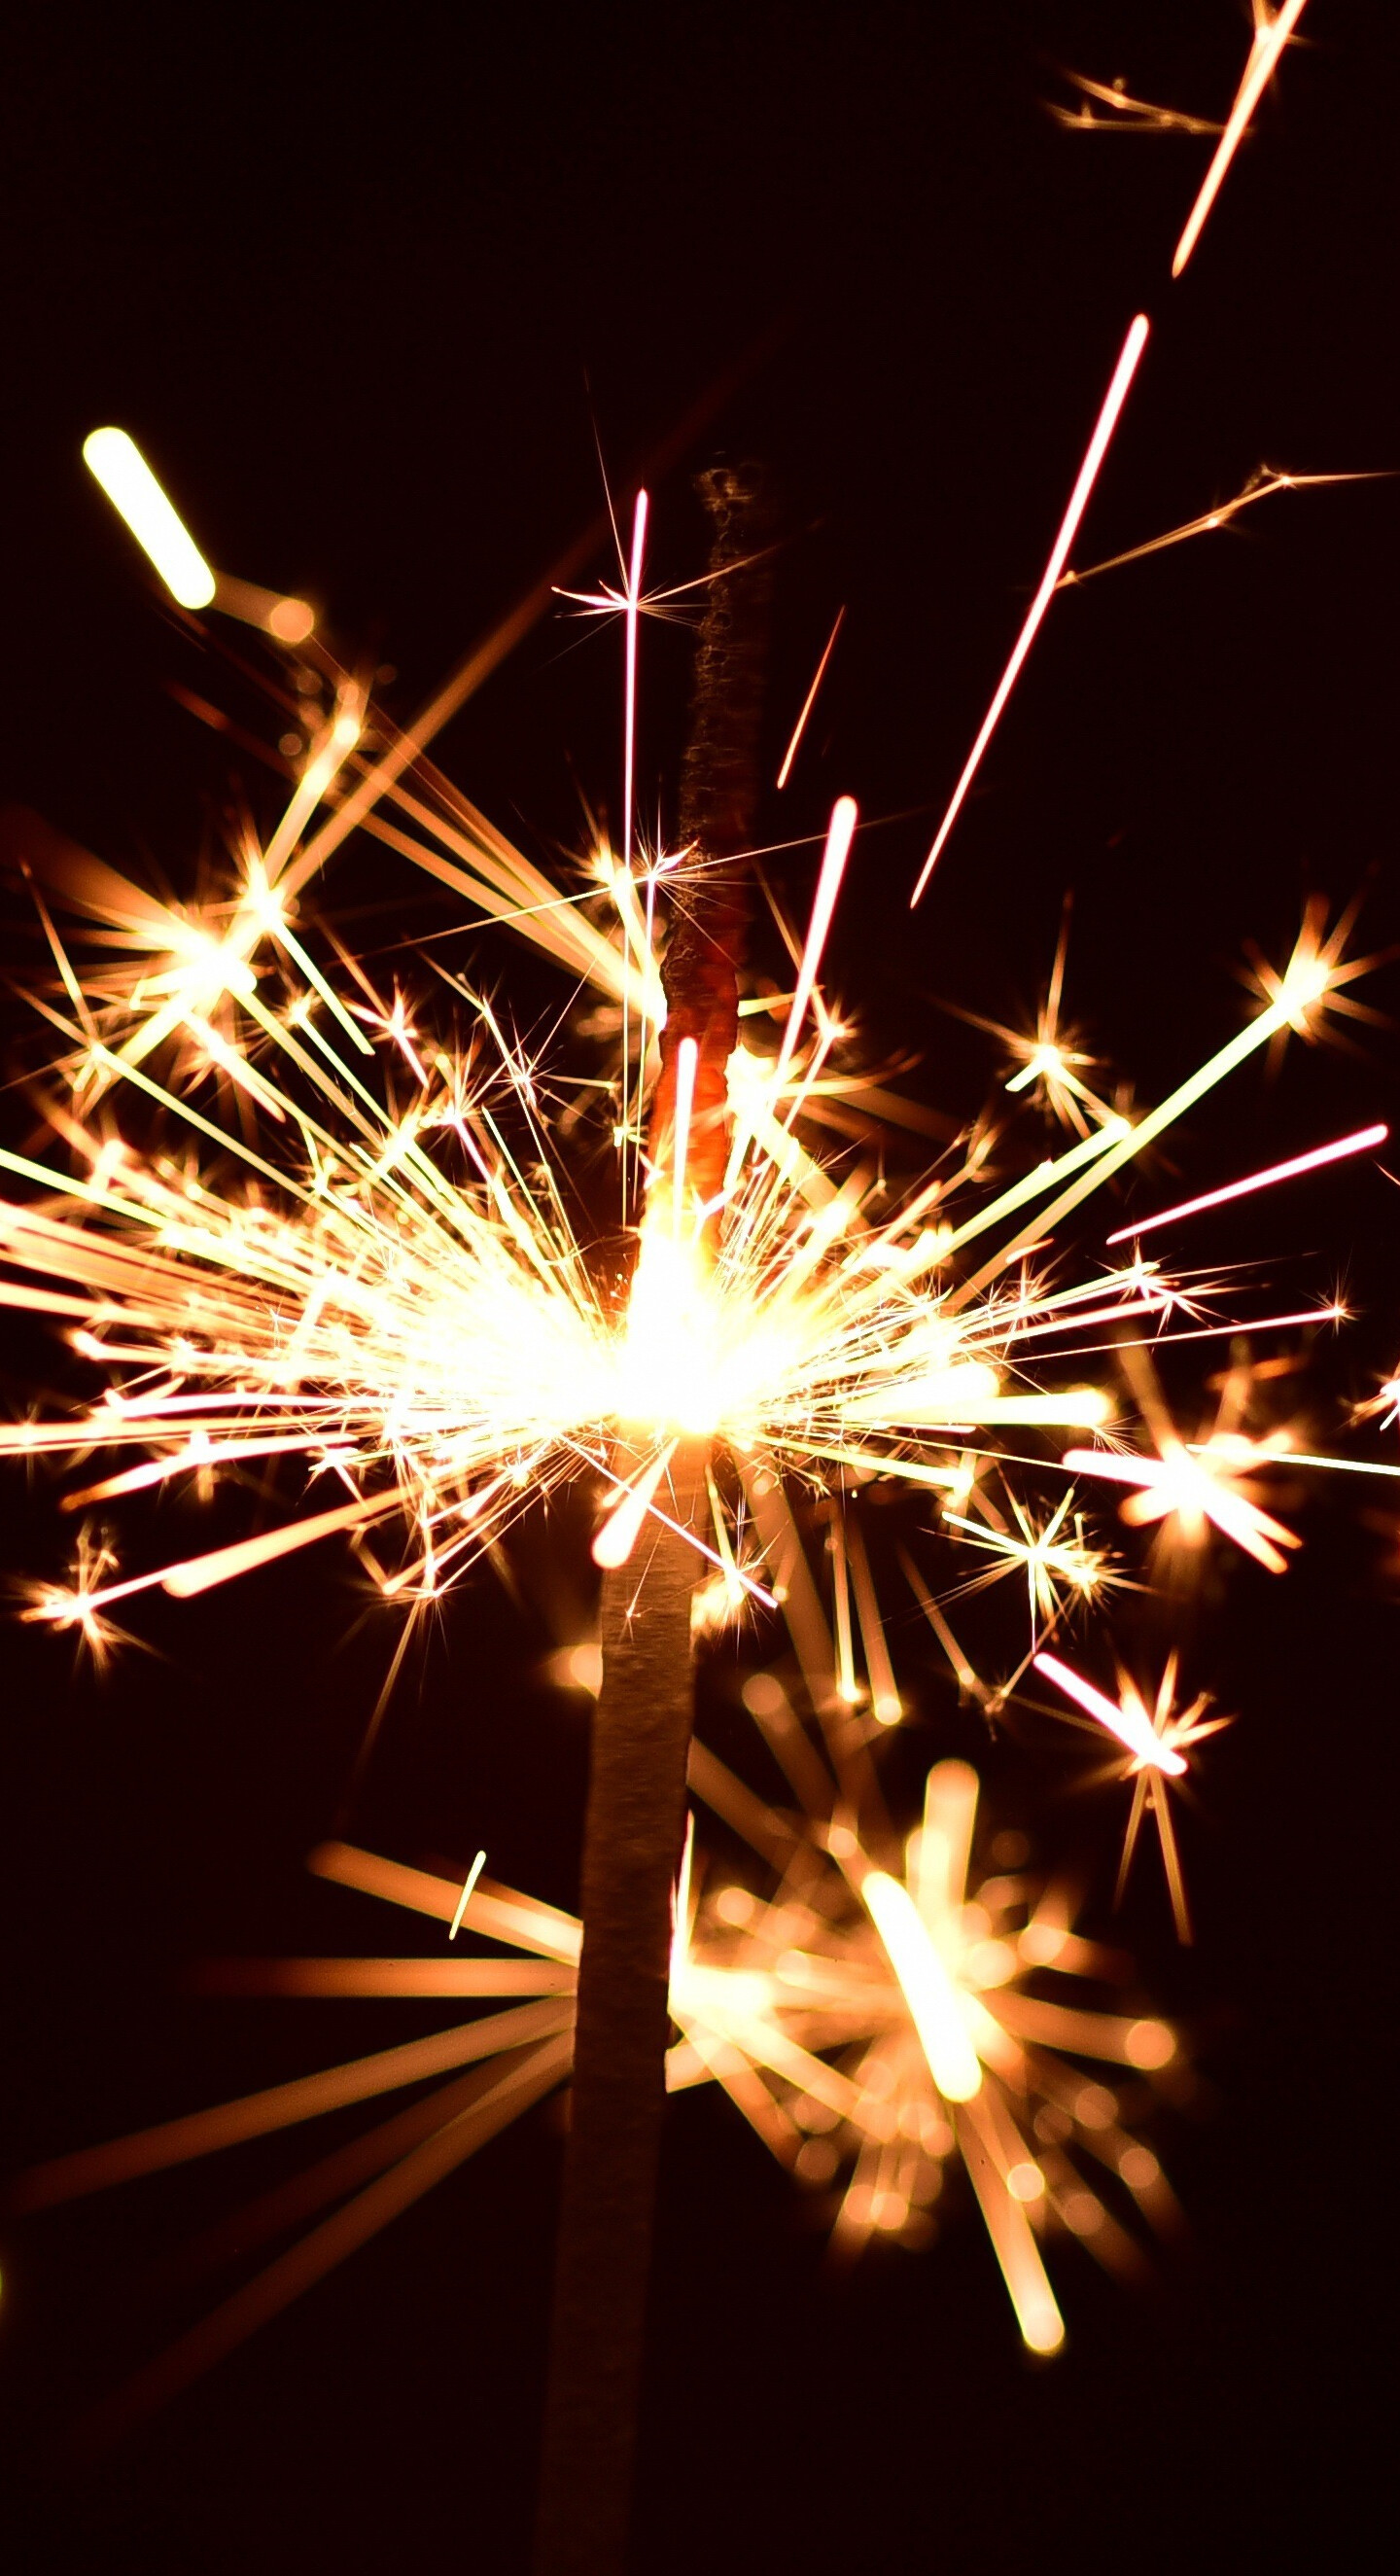 Sparkler, Festival sparkler fireworks, LG V30 wallpaper, LG G6, 1440x2650 HD Phone